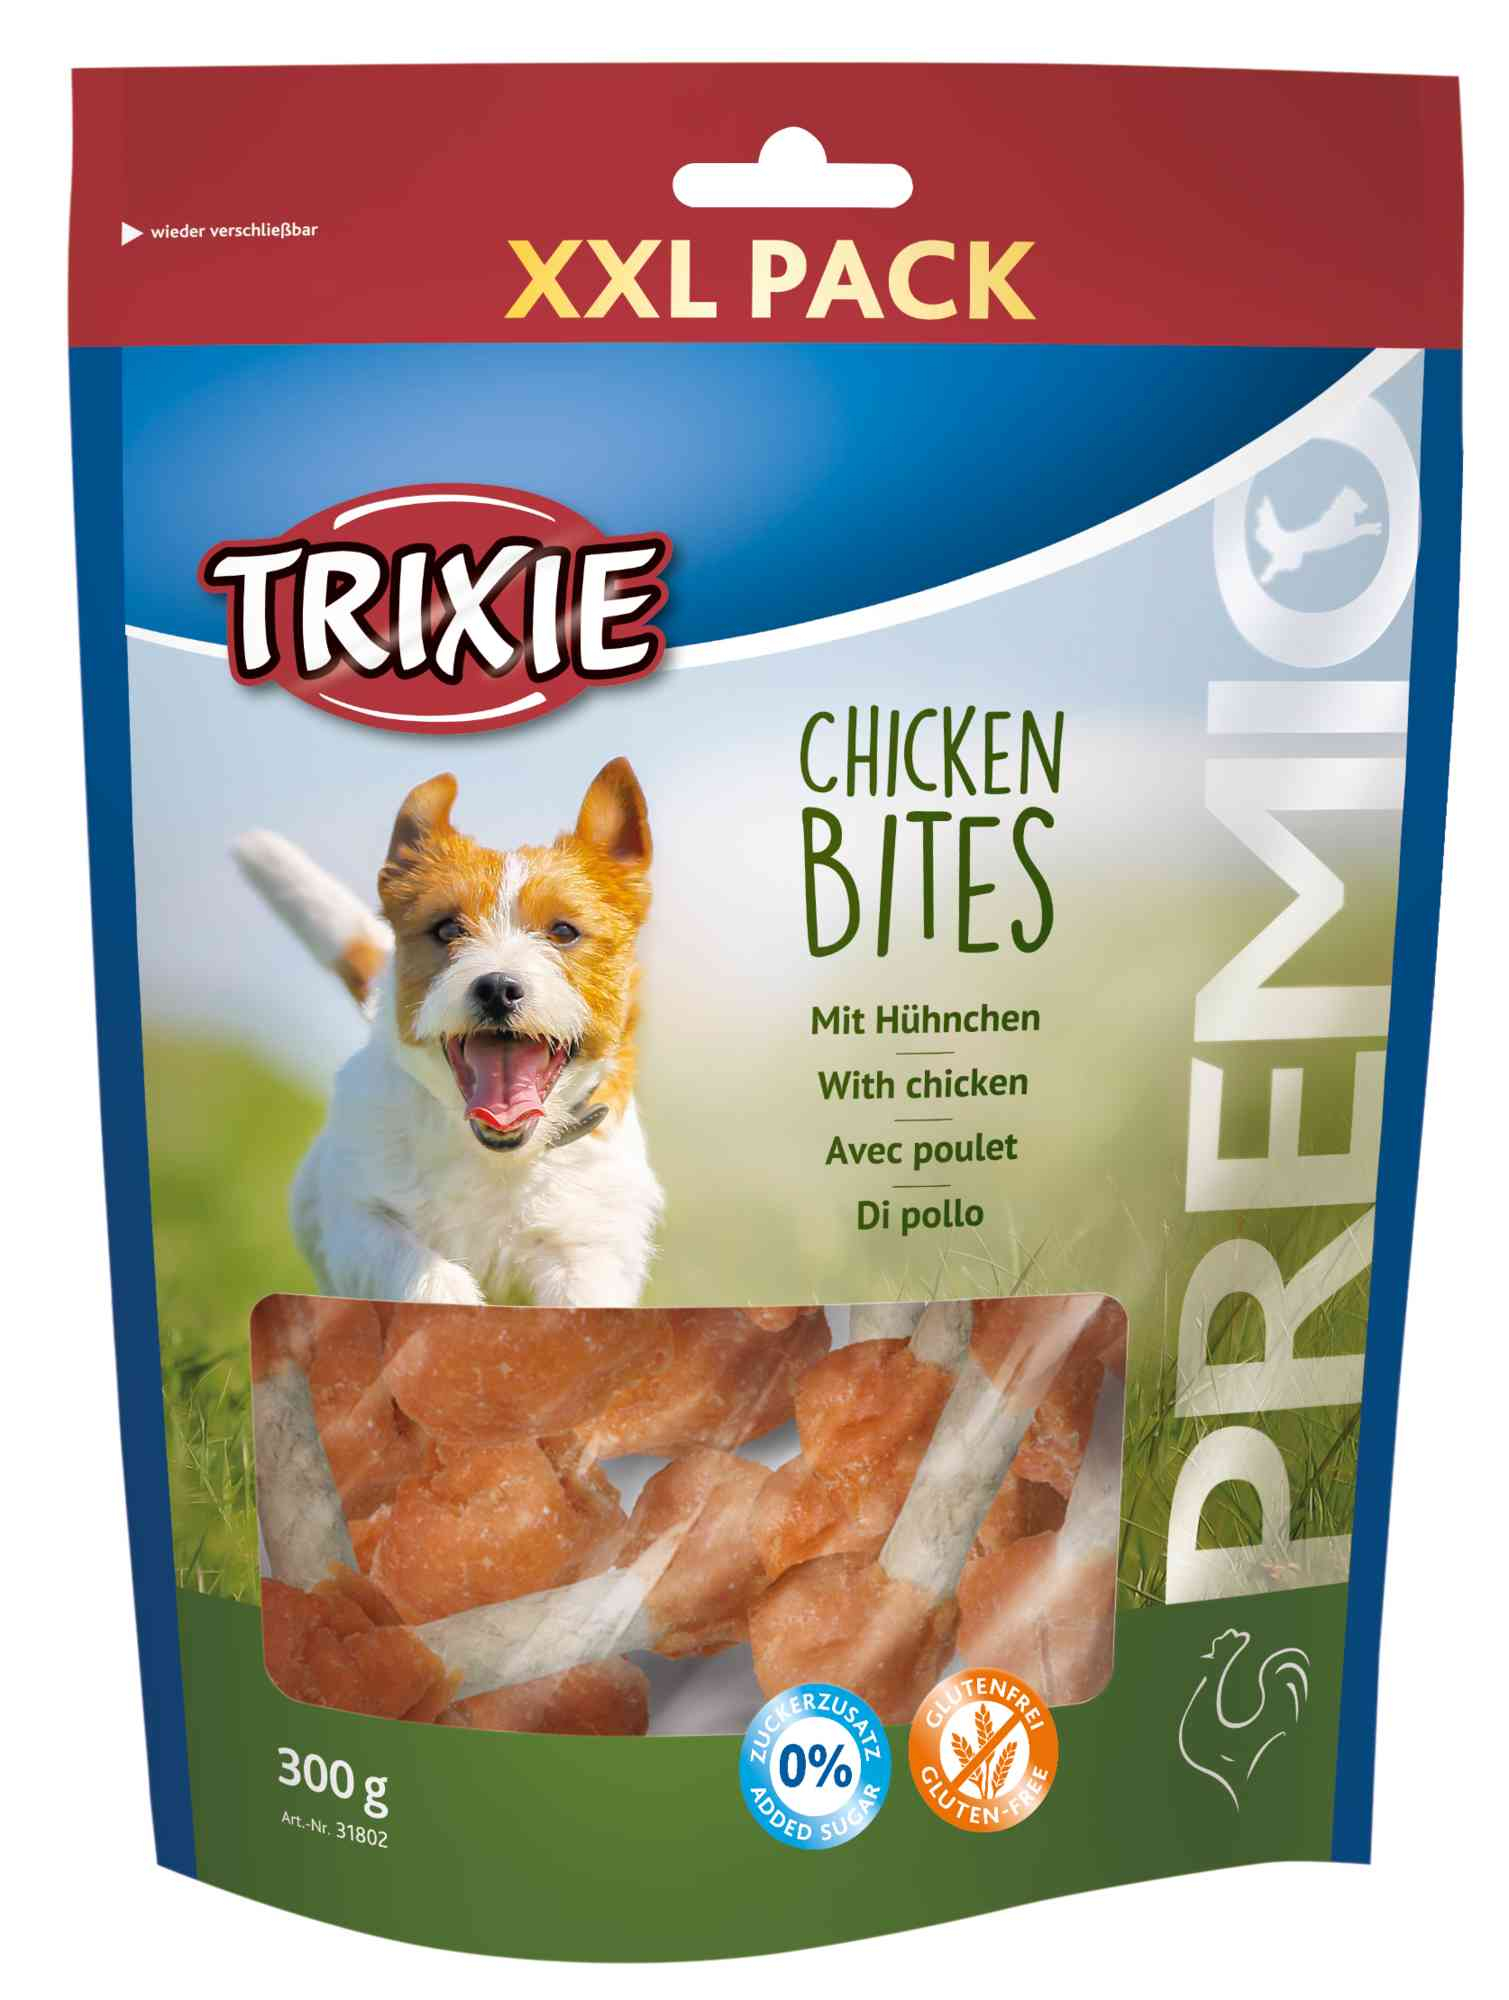 PREMIO Chicken Bites XXL Pack